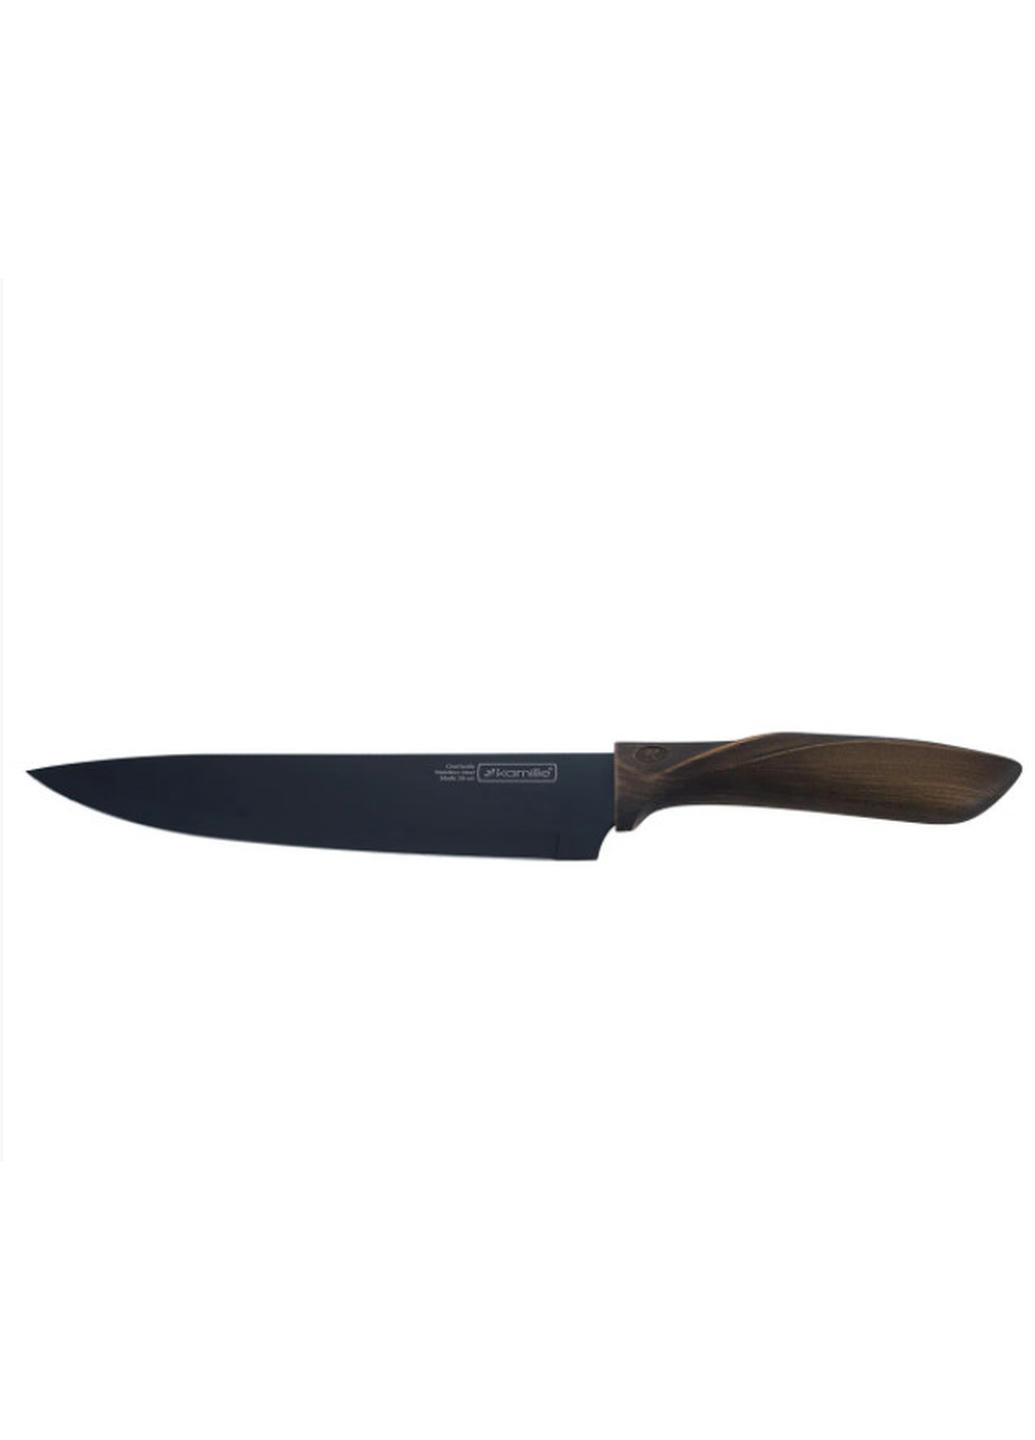 Набор ножей KM-5167 4 предмета Kamille комбинированные,